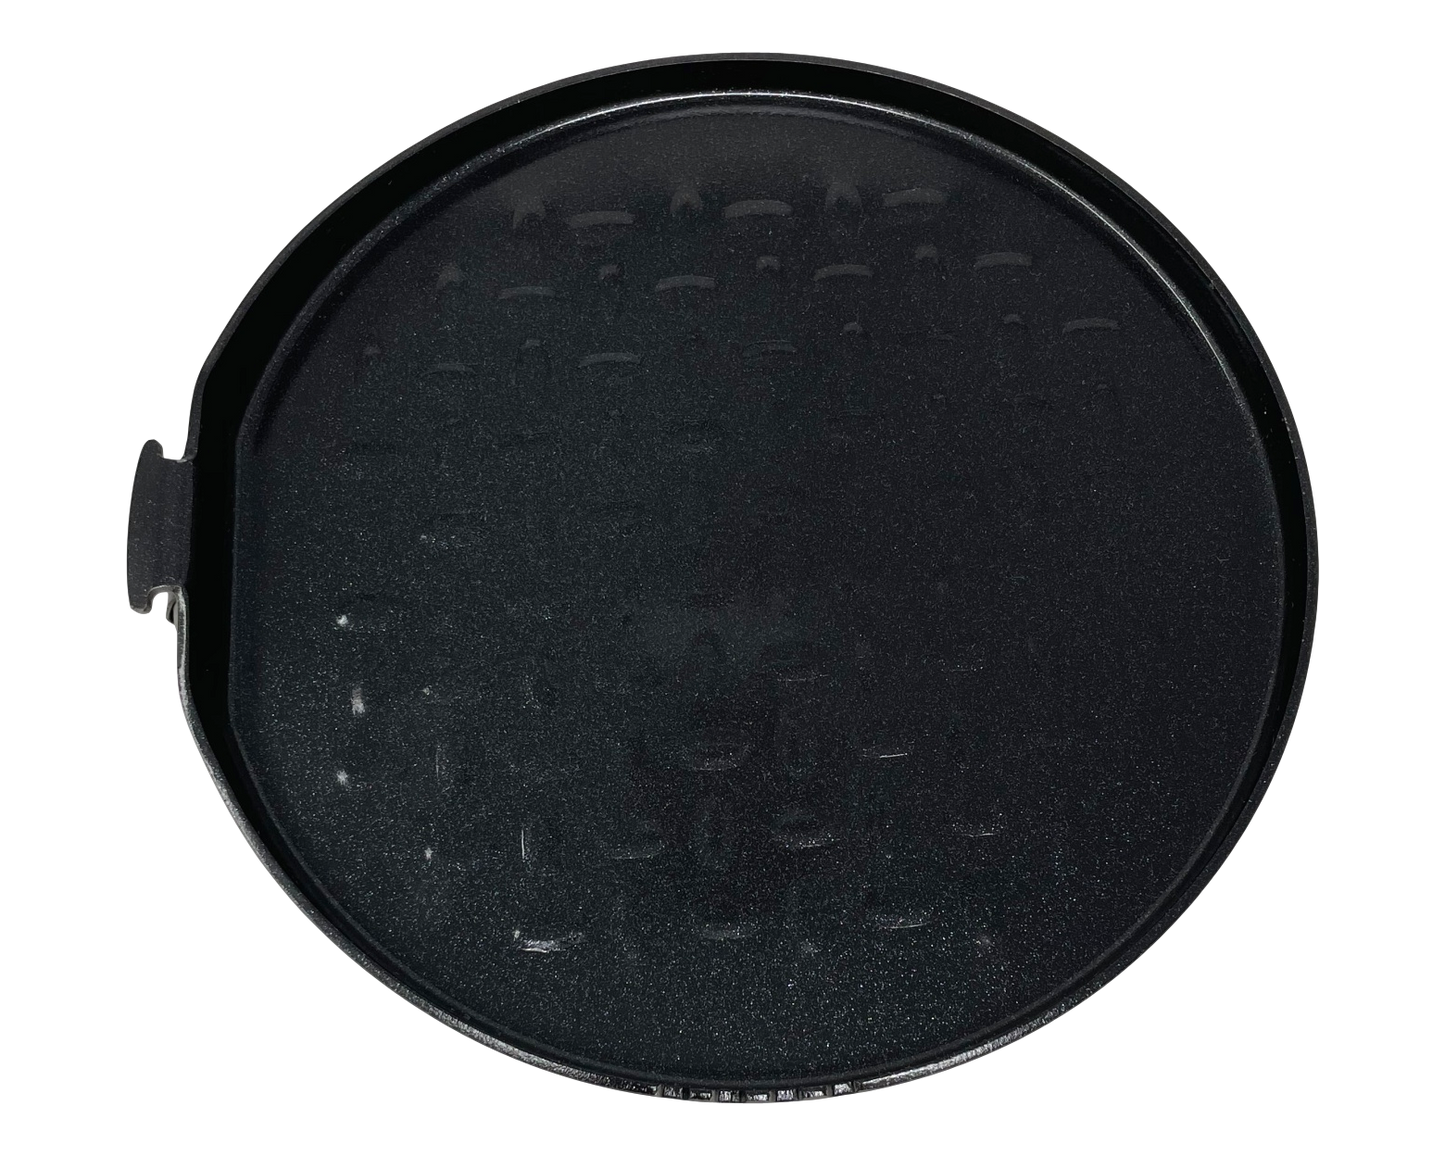 Valtcan Titan-Grillpfanne, antihaftbeschichtet, keramikbeschichtet, 185 mm, 7,3 Zoll Durchmesser, 420 g 